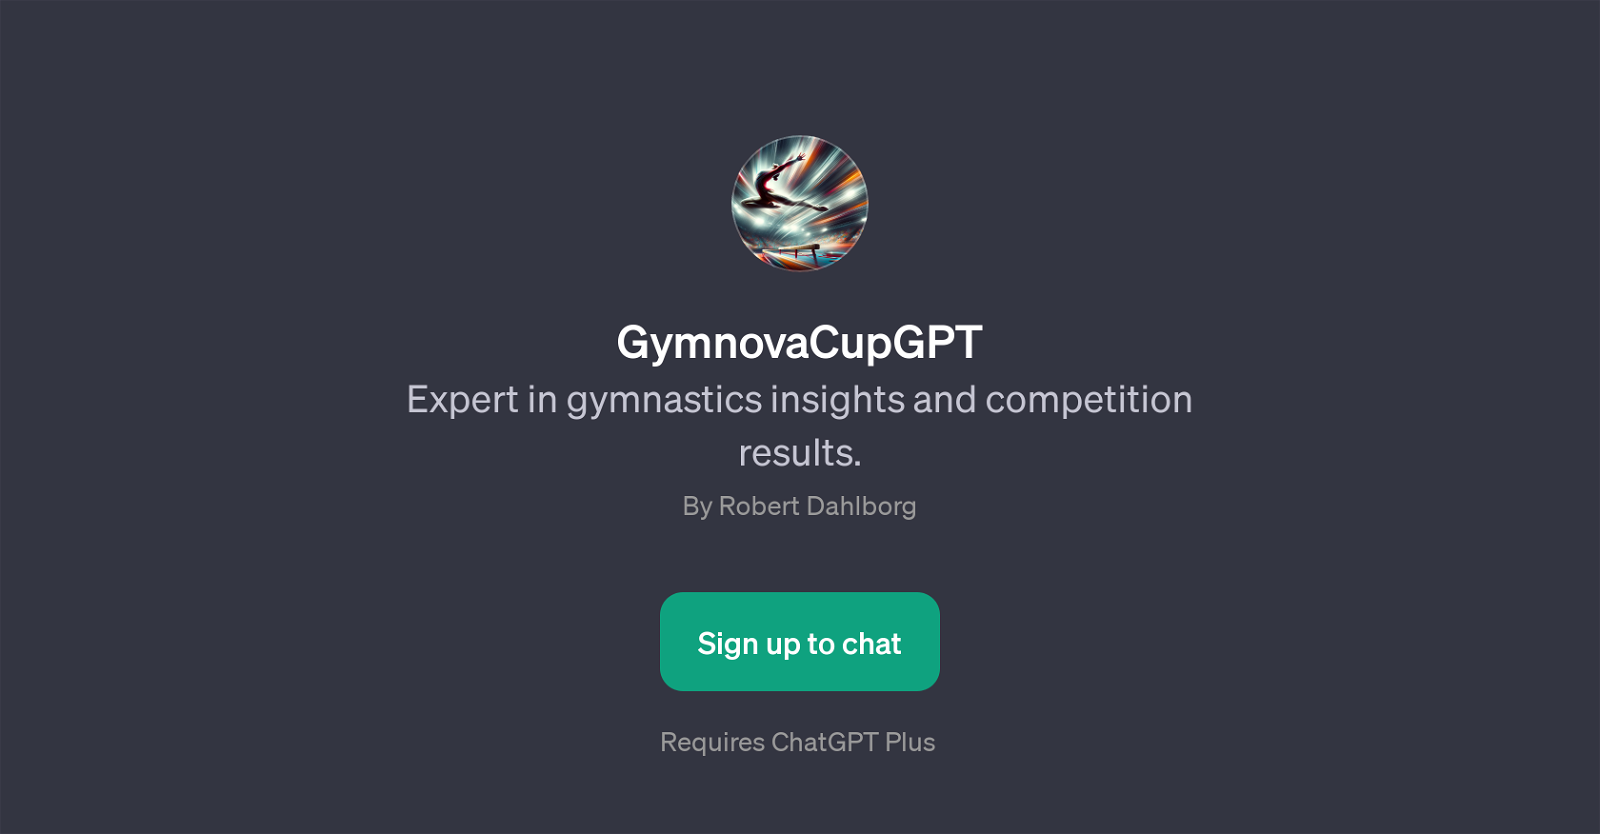 GymnovaCupGPT website